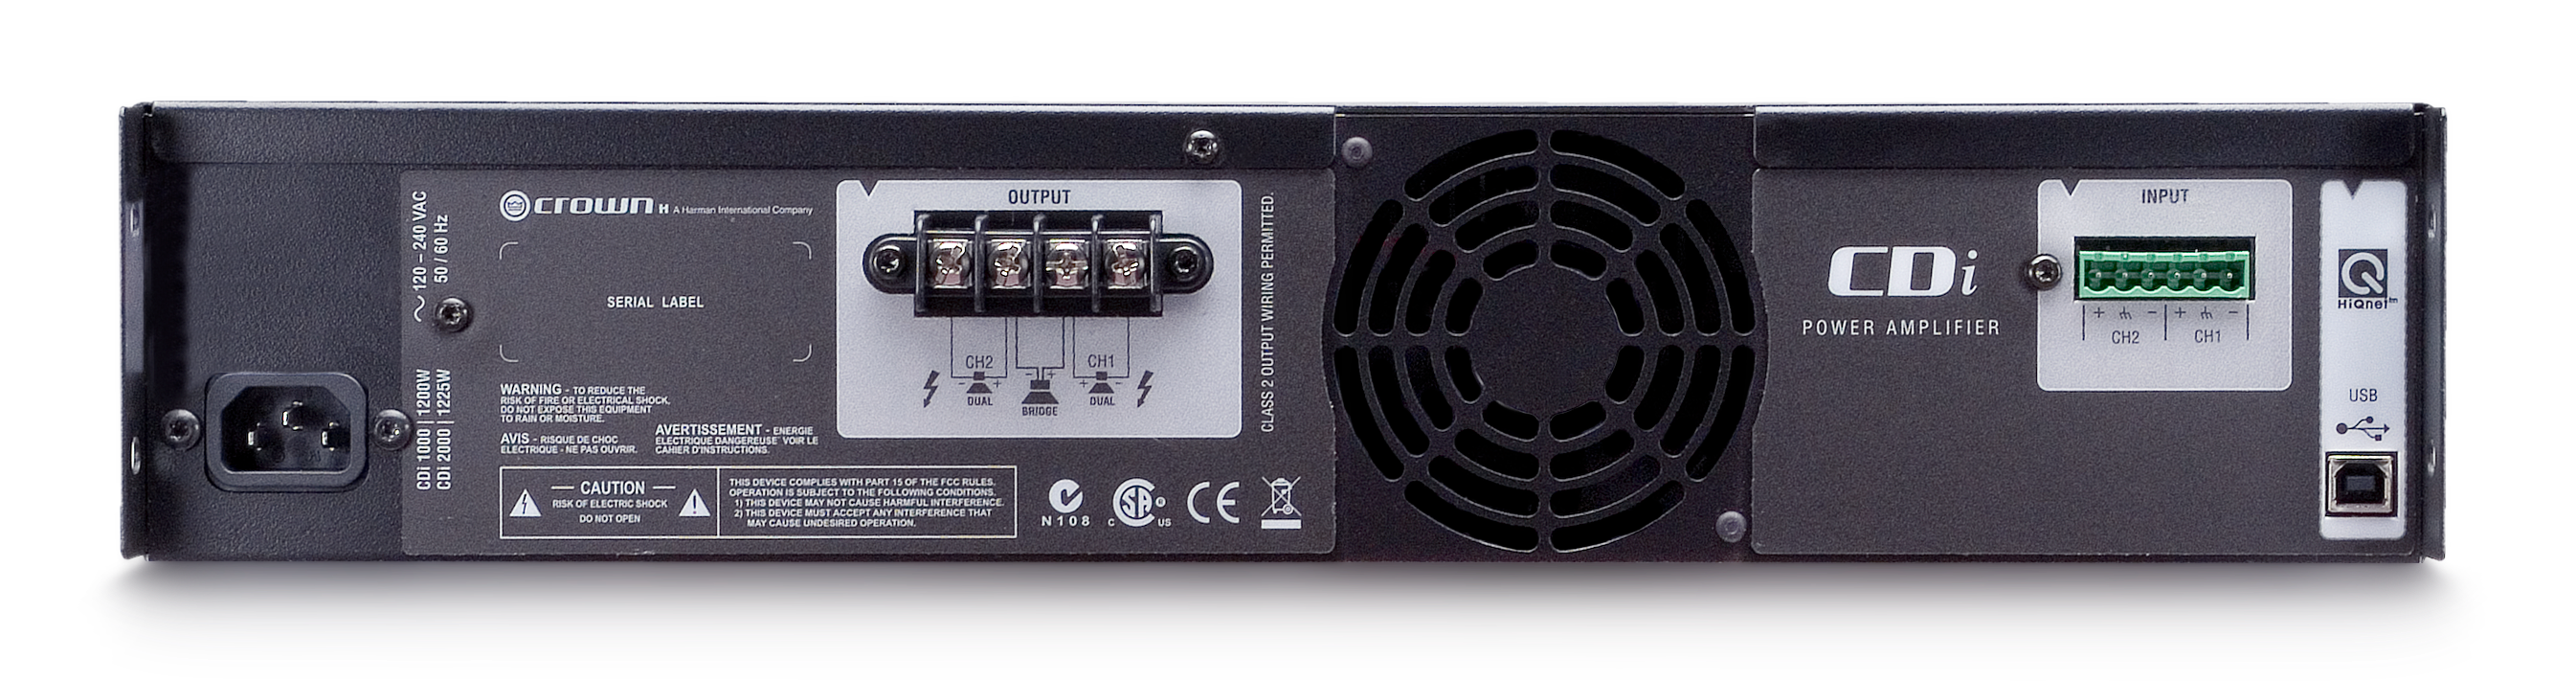 CROWN CDi 1000 Amplificador de potencia 2 canales,  500 W a 4 Ω, 70 V/140 V